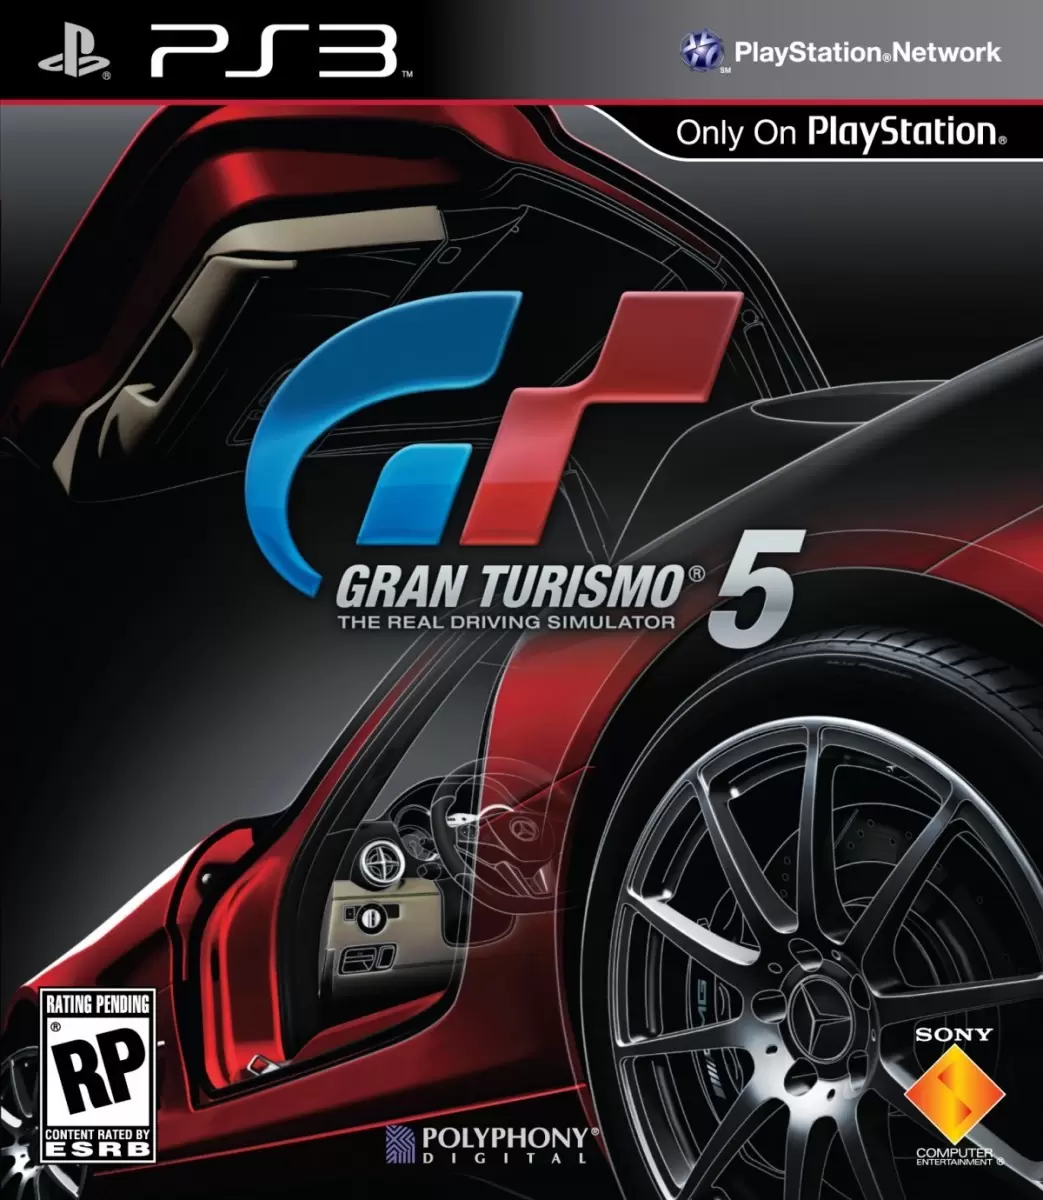 PS3 Games - Gran Turismo 5